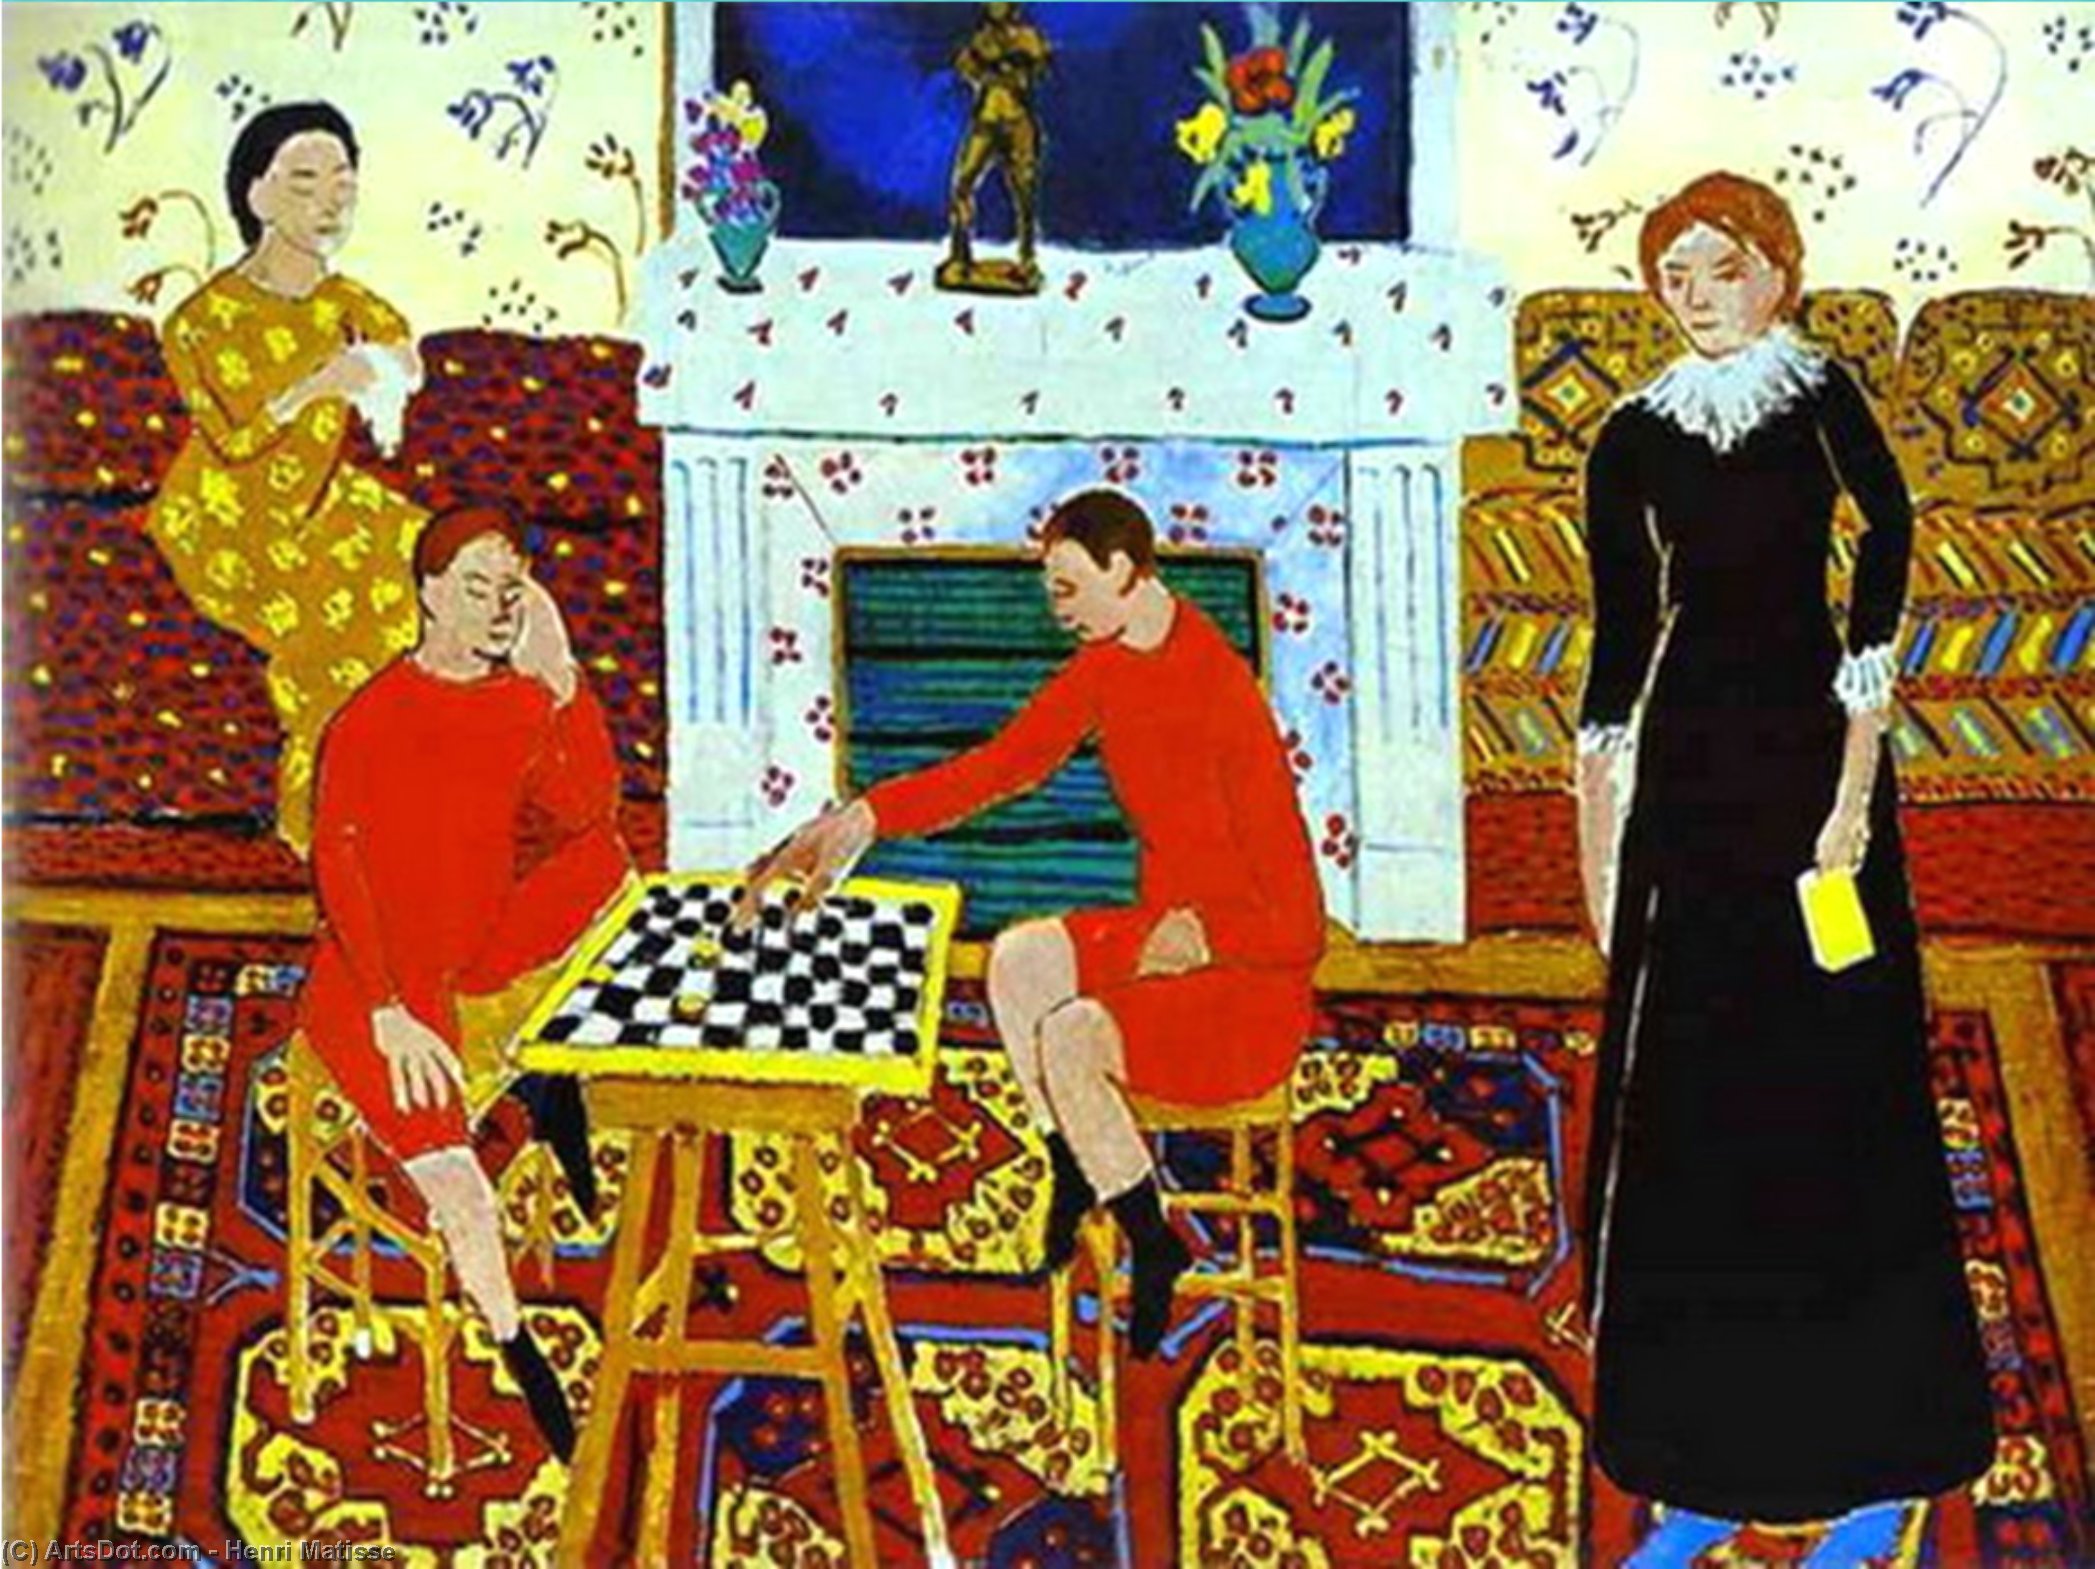 Wikoo.org - موسوعة الفنون الجميلة - اللوحة، العمل الفني Henri Matisse - The Painter's Family